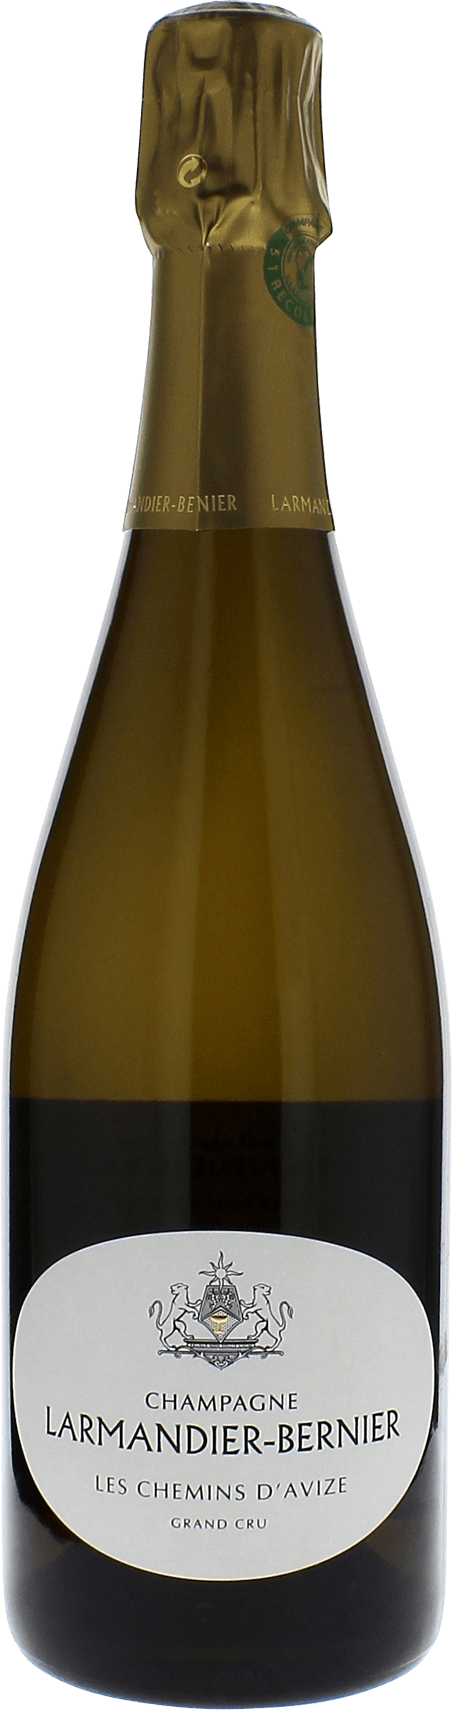 Larmandier-bernier les chemins d'avize grand cru extra brut 2015  LARMANDIER BERNIER, Champagne